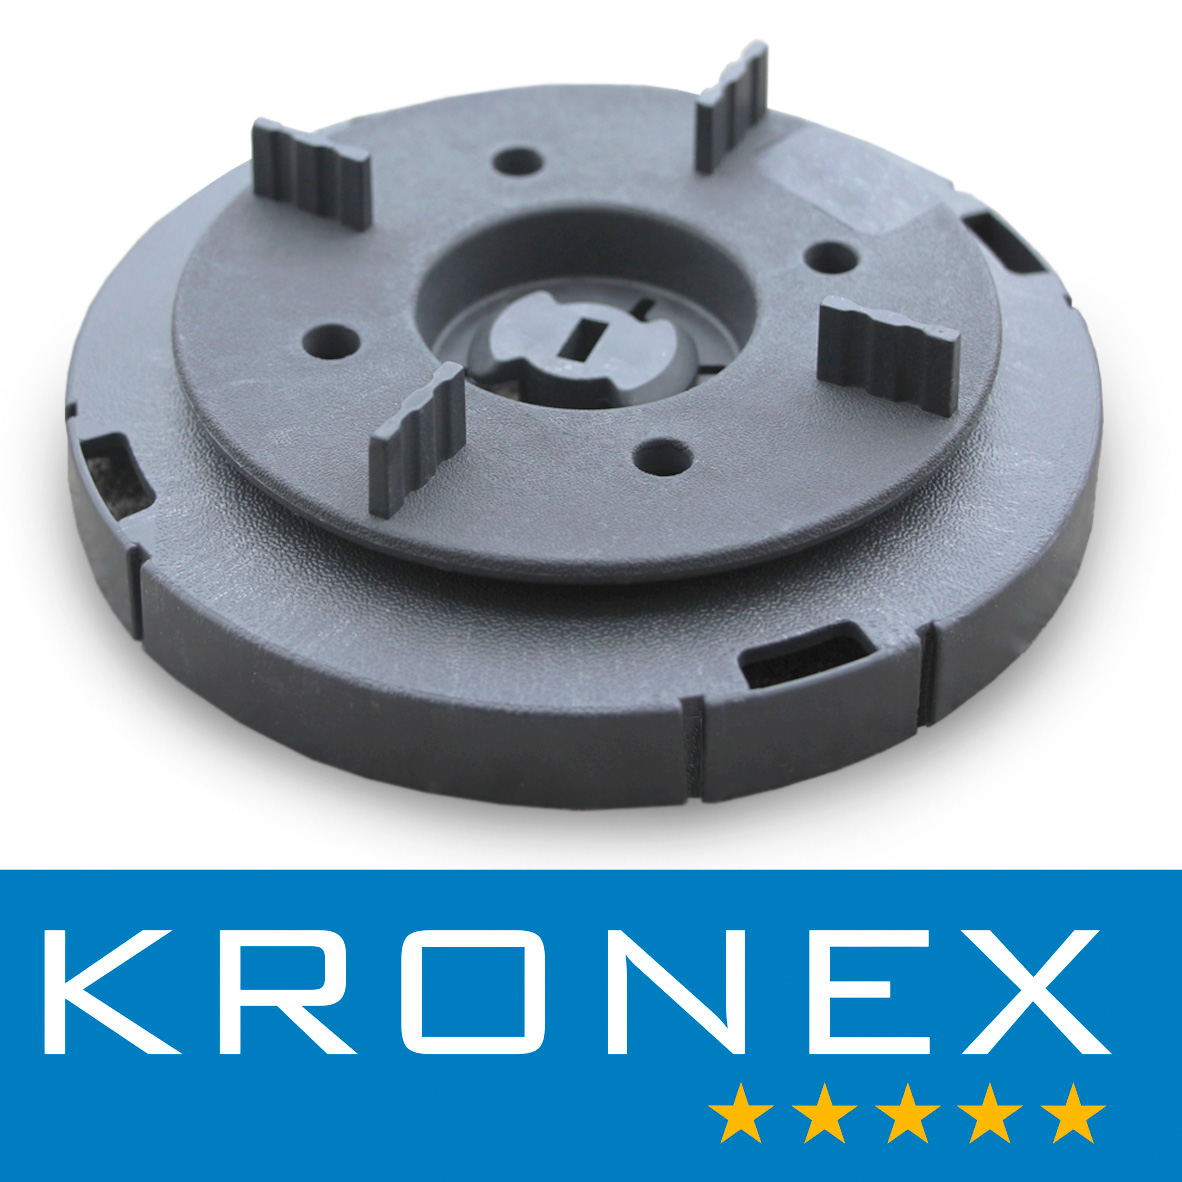 Автоматический регулятор угла наклона до 5,5 градусов KRONEX с табулятором для плитки 3мм